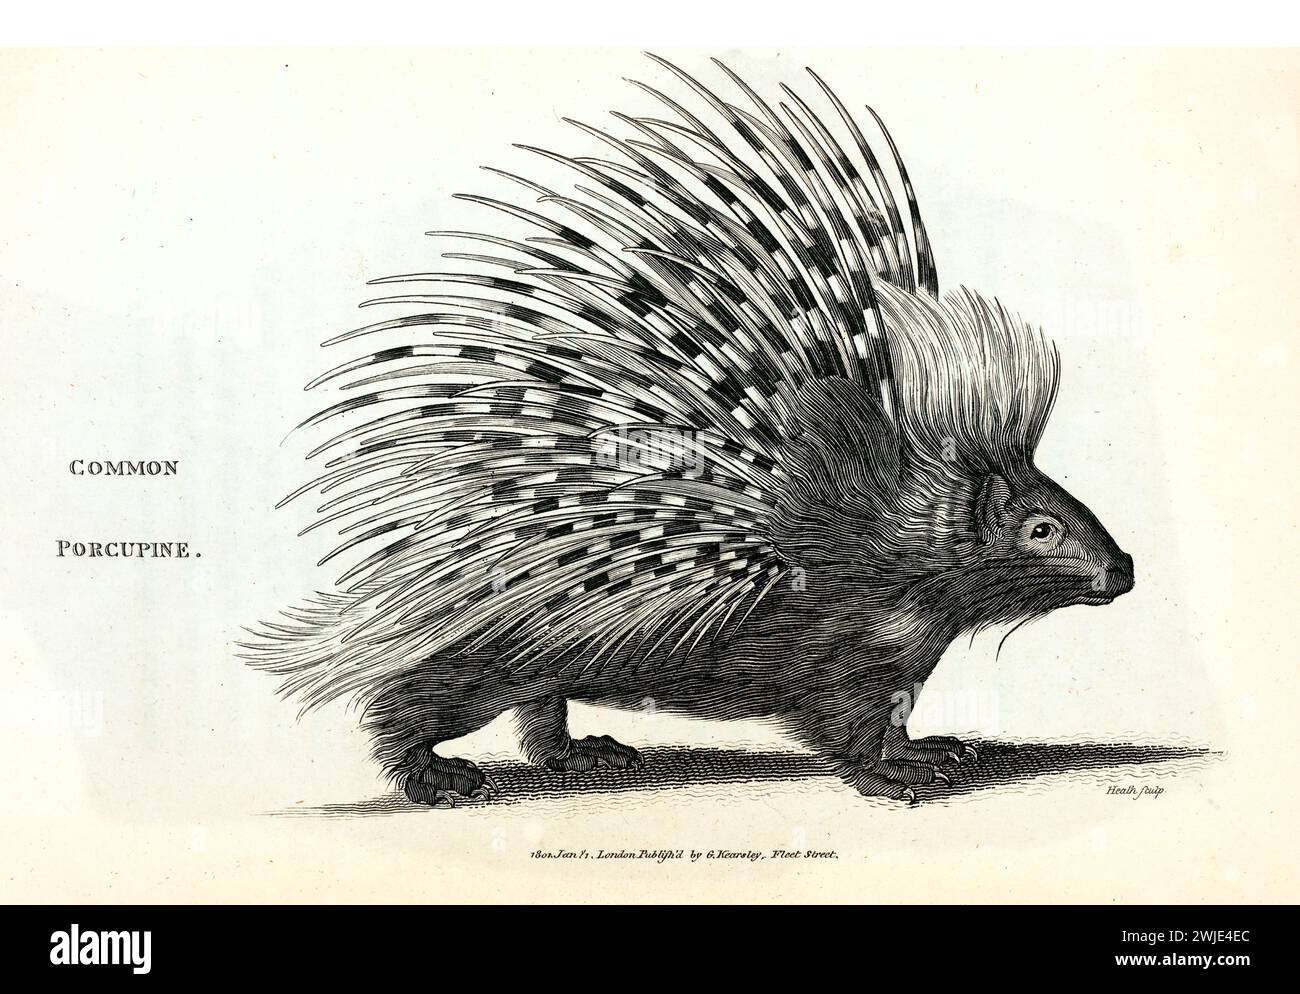 Alte gravierte Illustration von Stachelschwein (Schürzenschwein). Erstellt von George Shaw, veröffentlicht in Zoological Lectures, London, 1809. Stockfoto